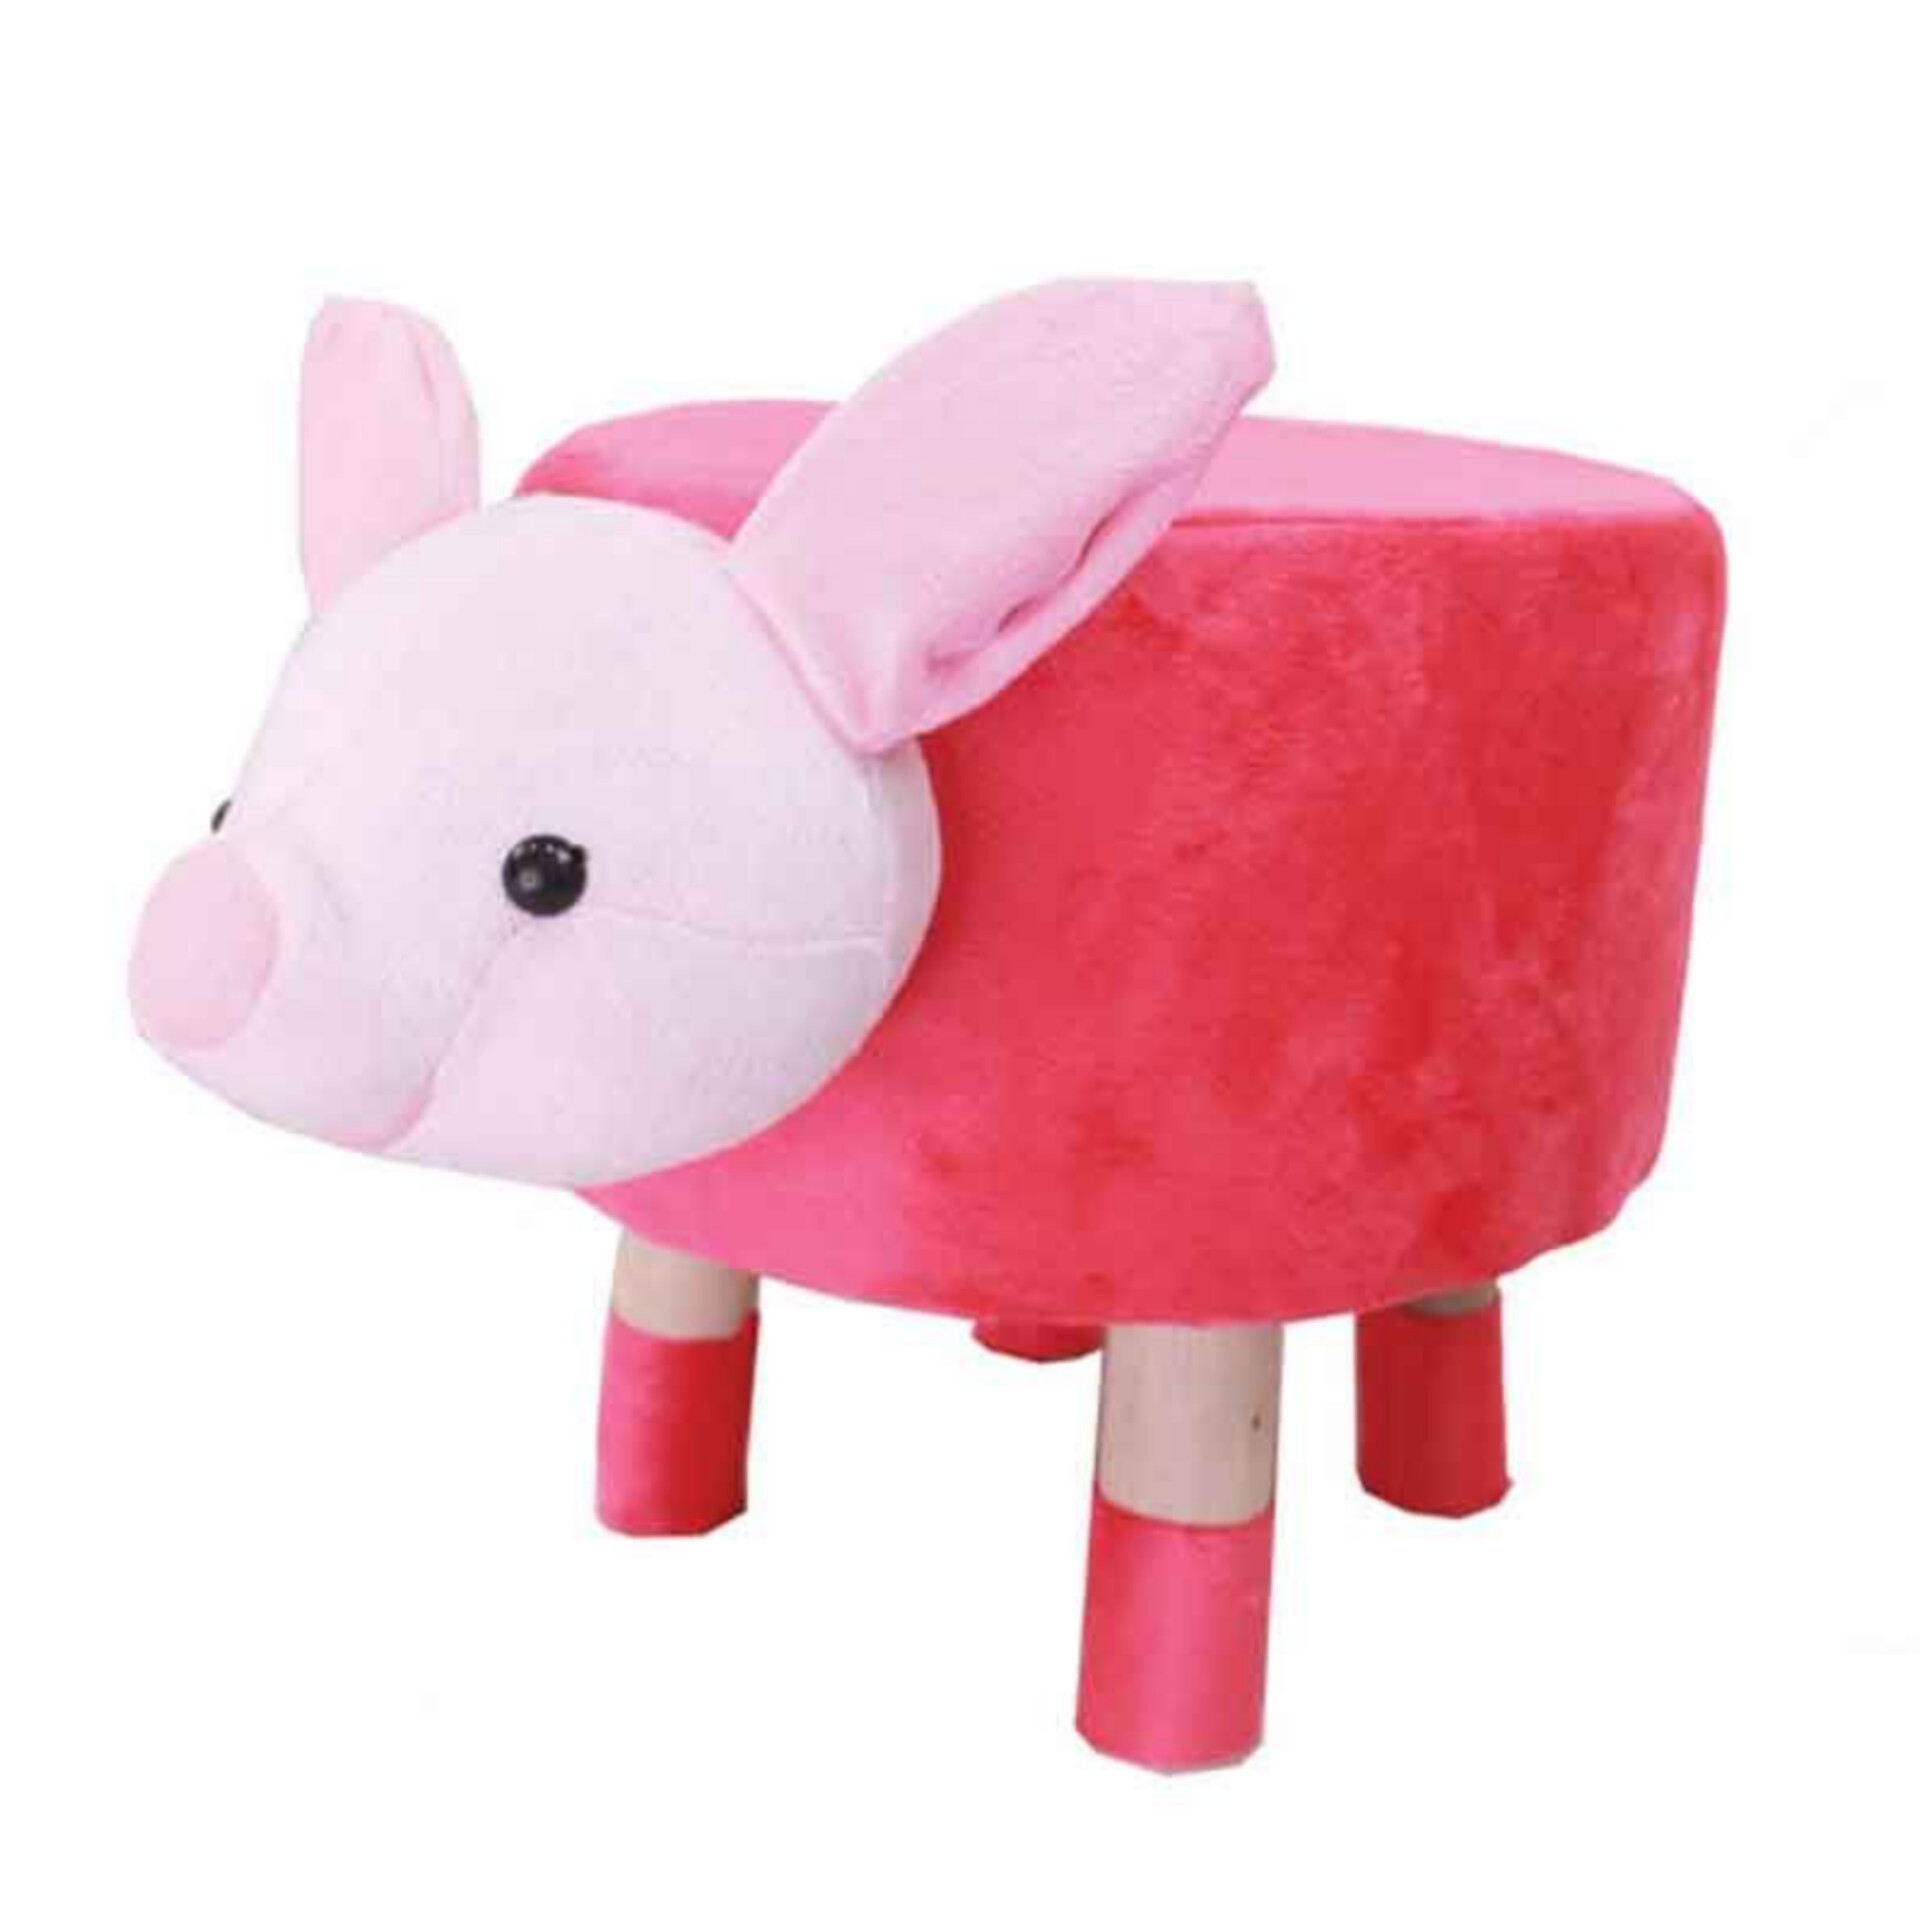 پاف کودک مدل خوک